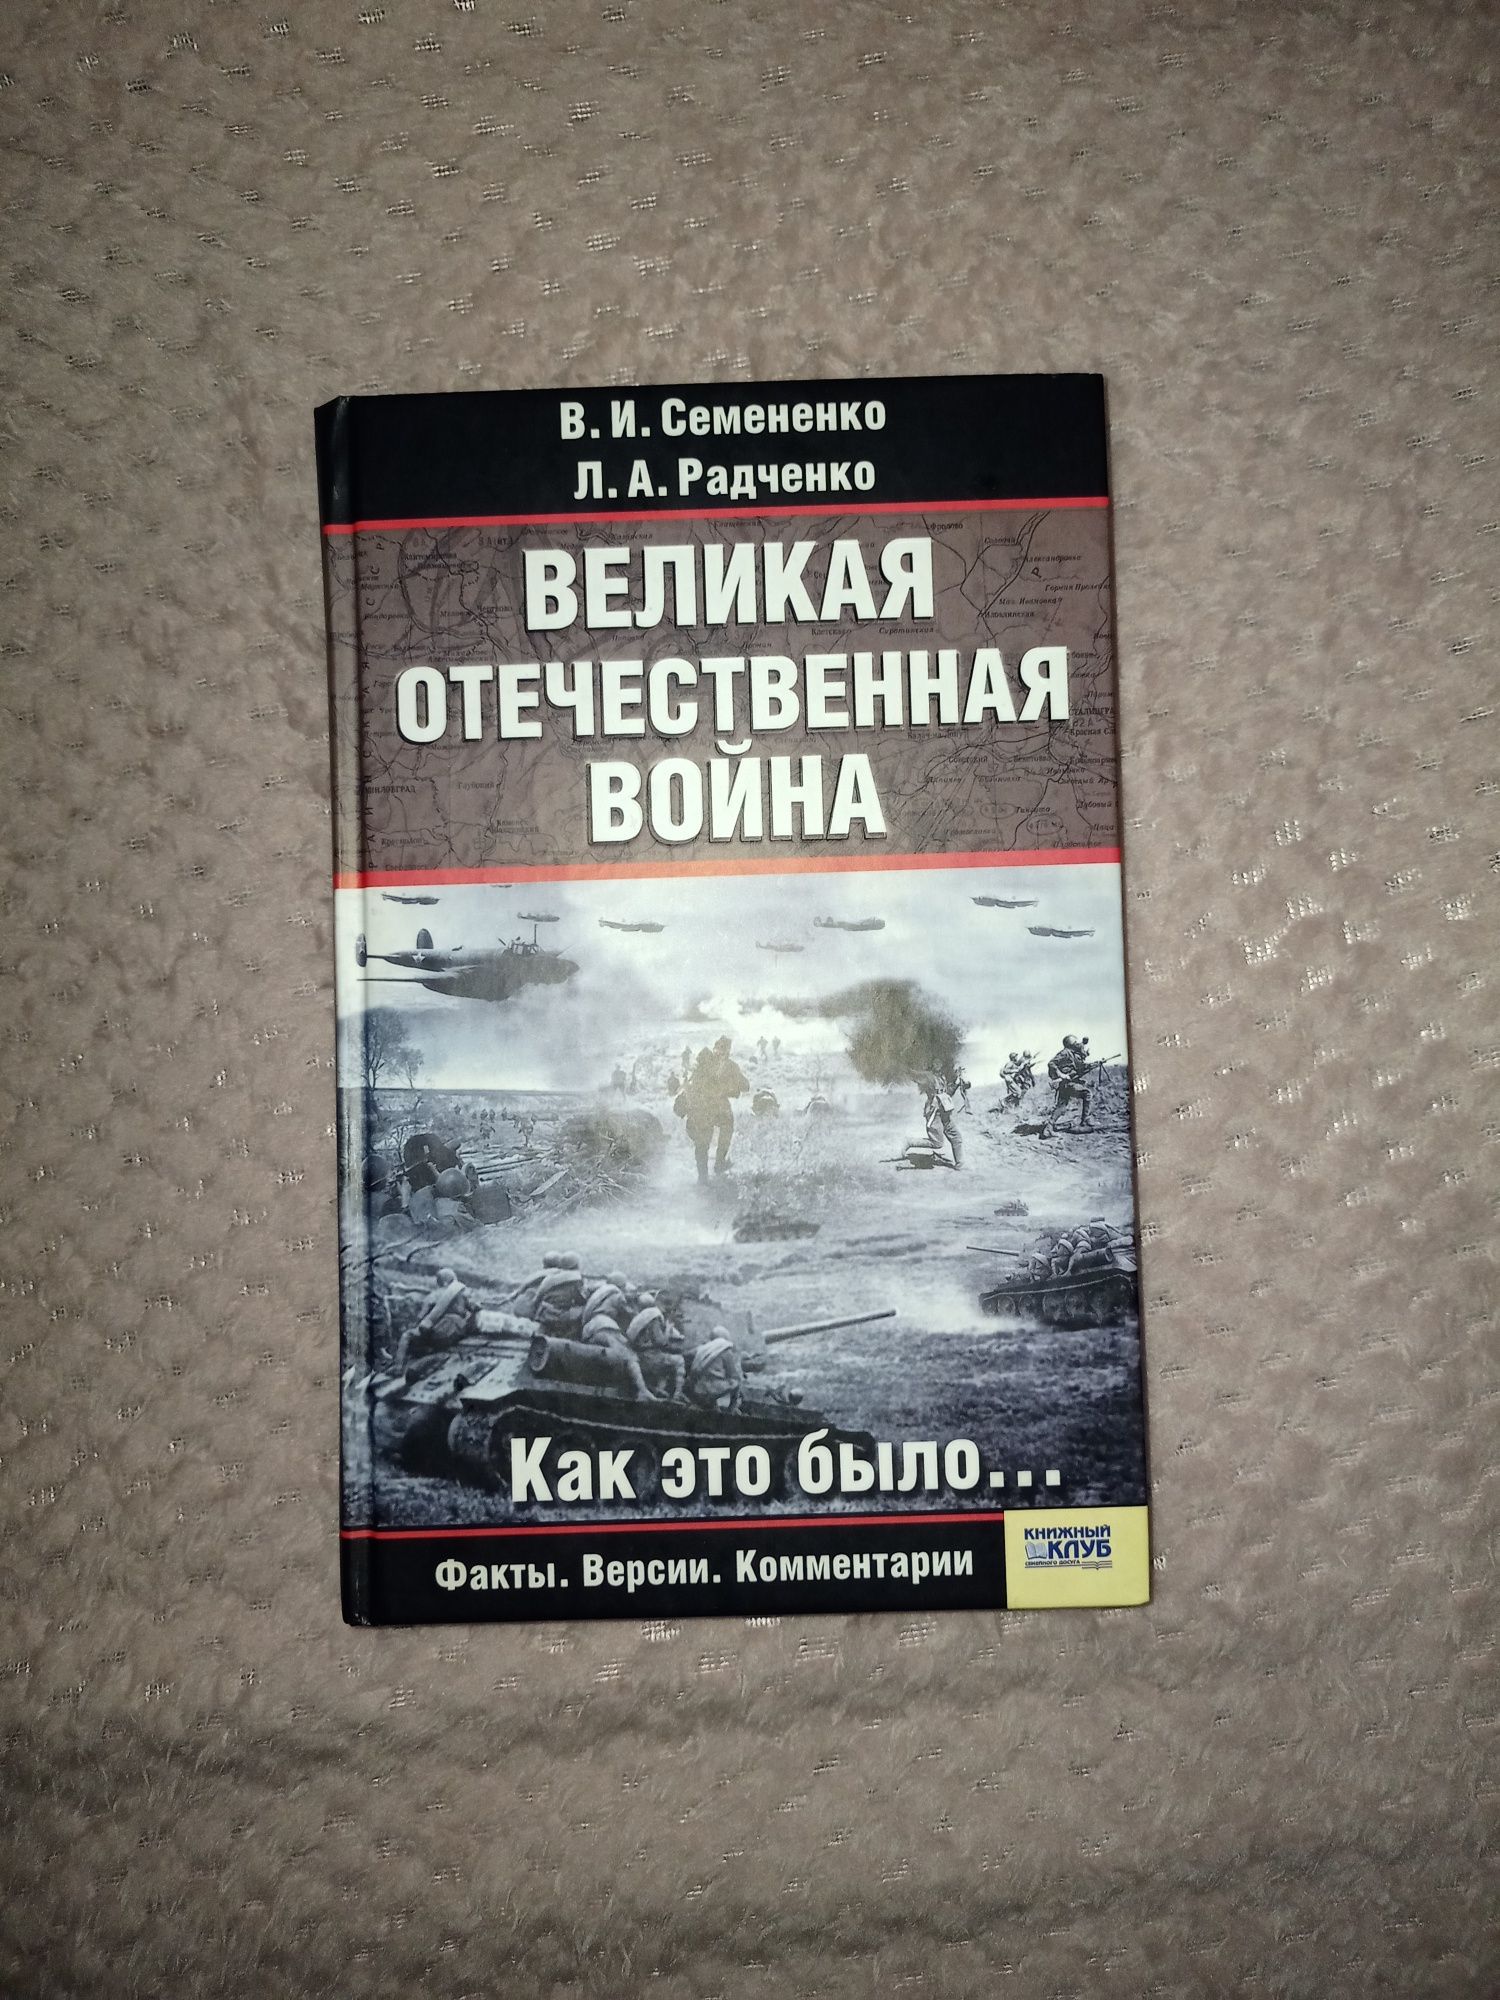 Книга "Великая отечественная война"